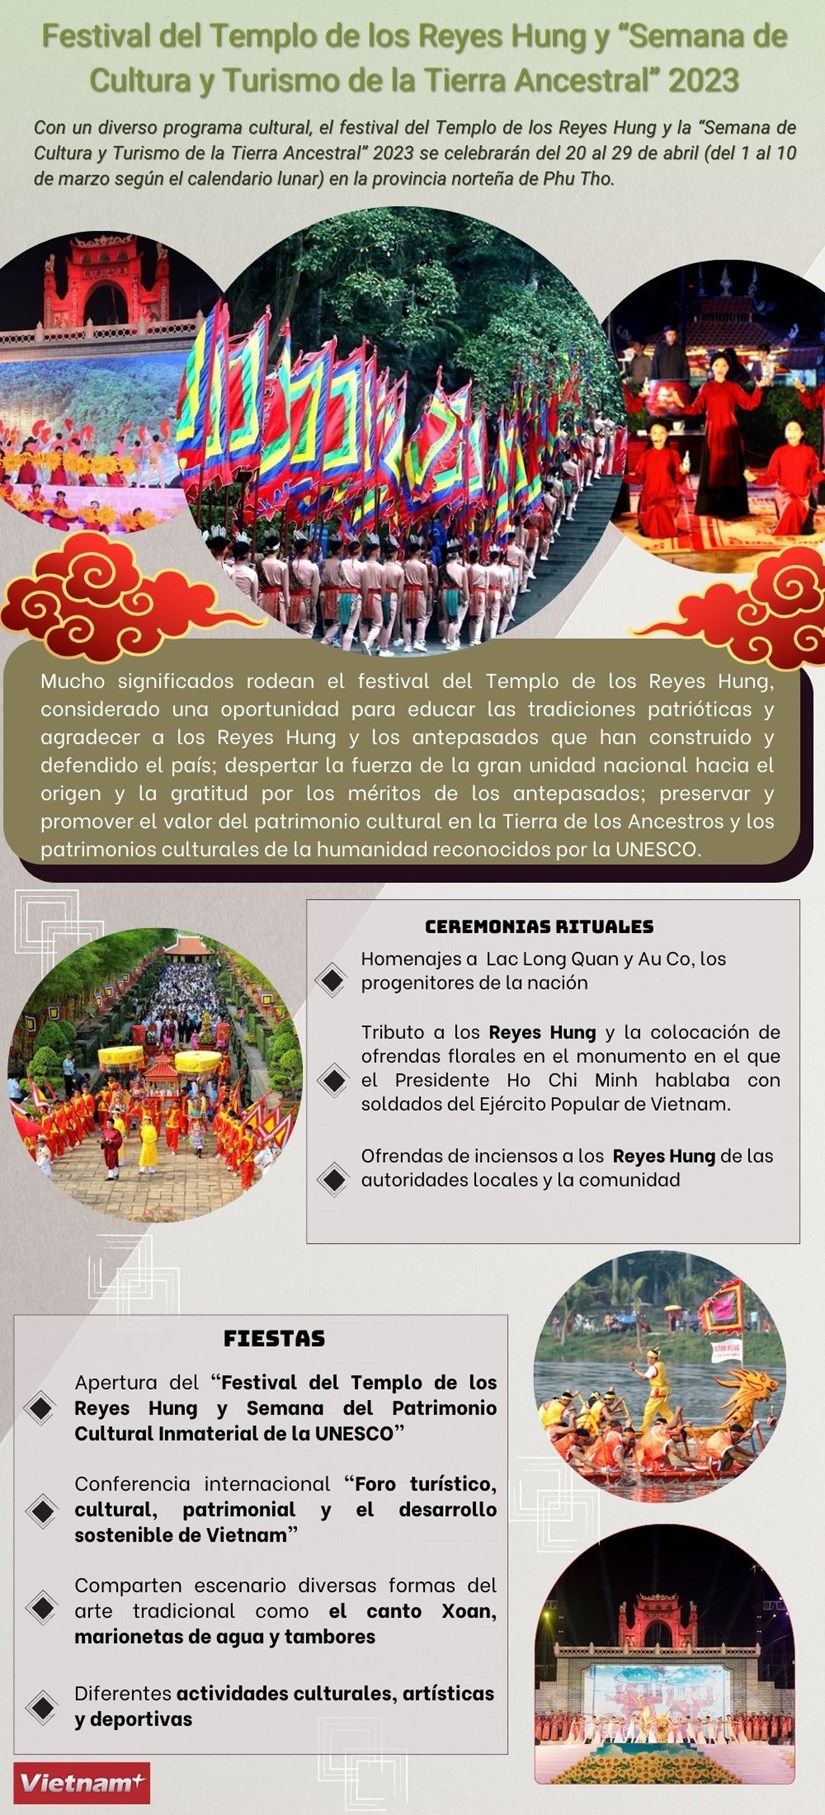 Festival del Templo de los Reyes Hung y “Semana de Cultura y Turismo de la Tierra Ancestral” 2023 hinh anh 1